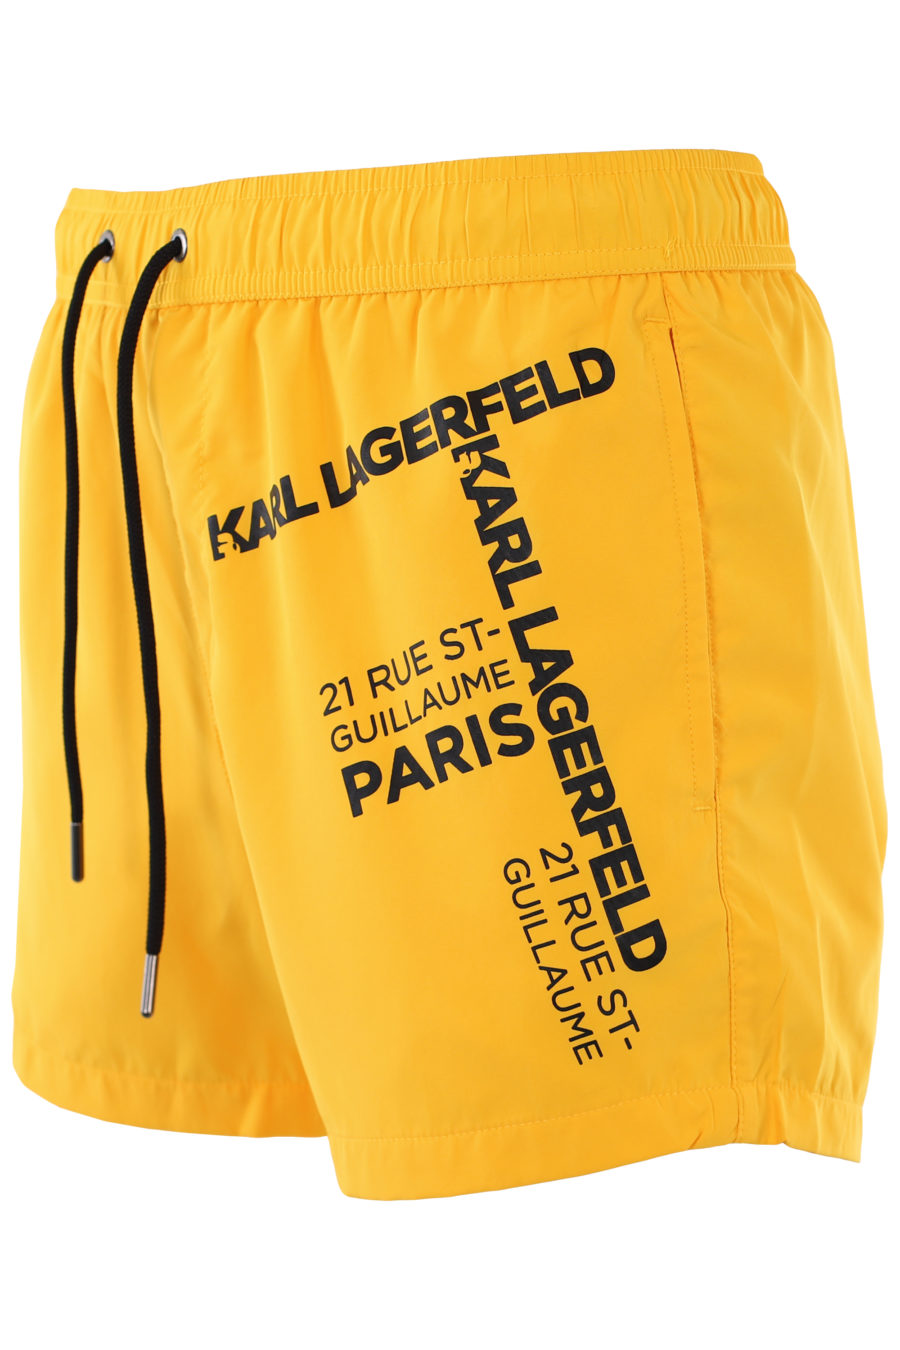 Bañador amarillo con logo "rue st-guillaume" negro - IMG 1049